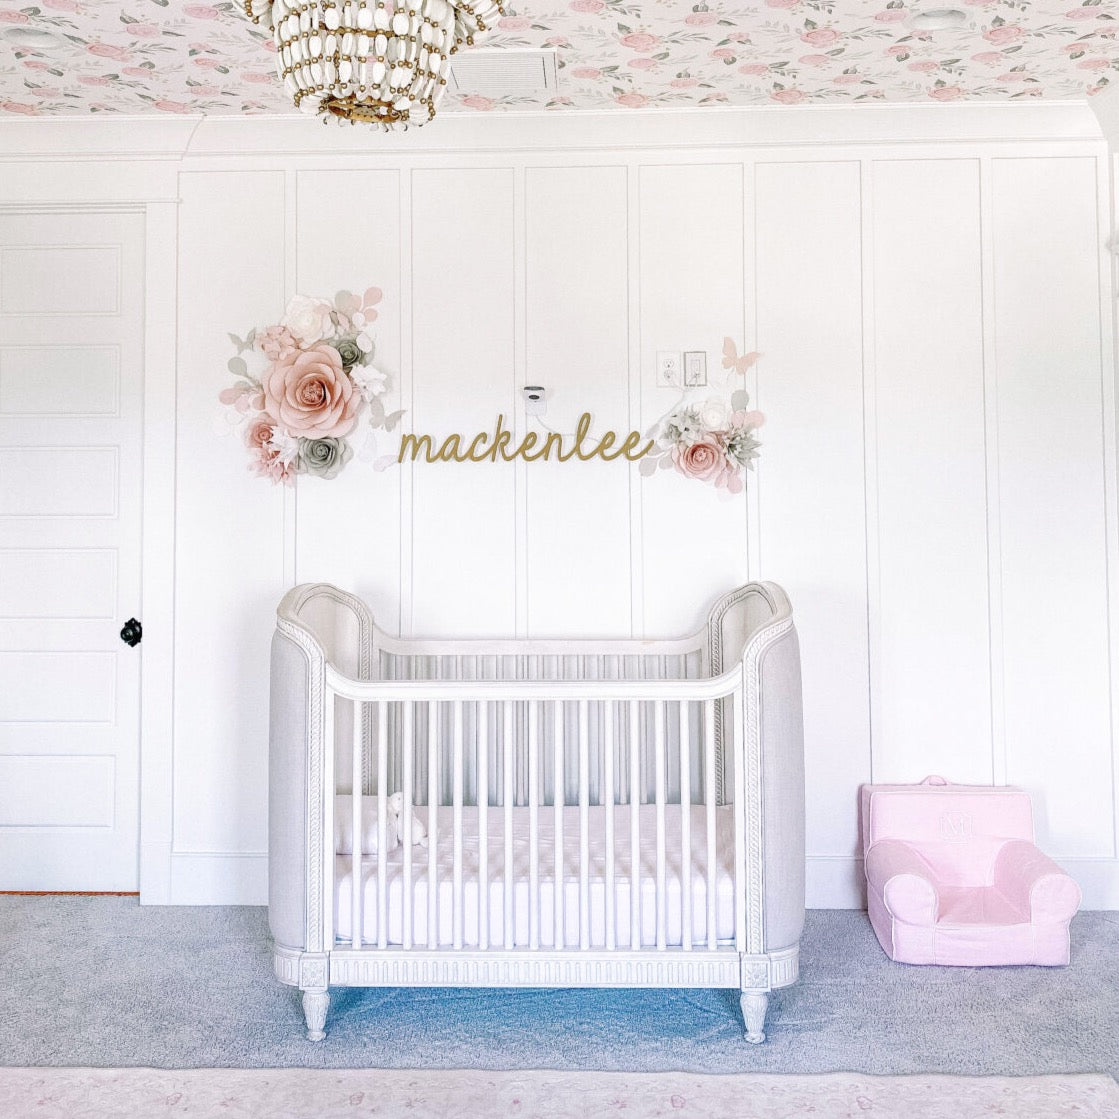 Close-up of Angela Lanter's Toddler Bedroom: Paper Flower Arrangement Over the Bed